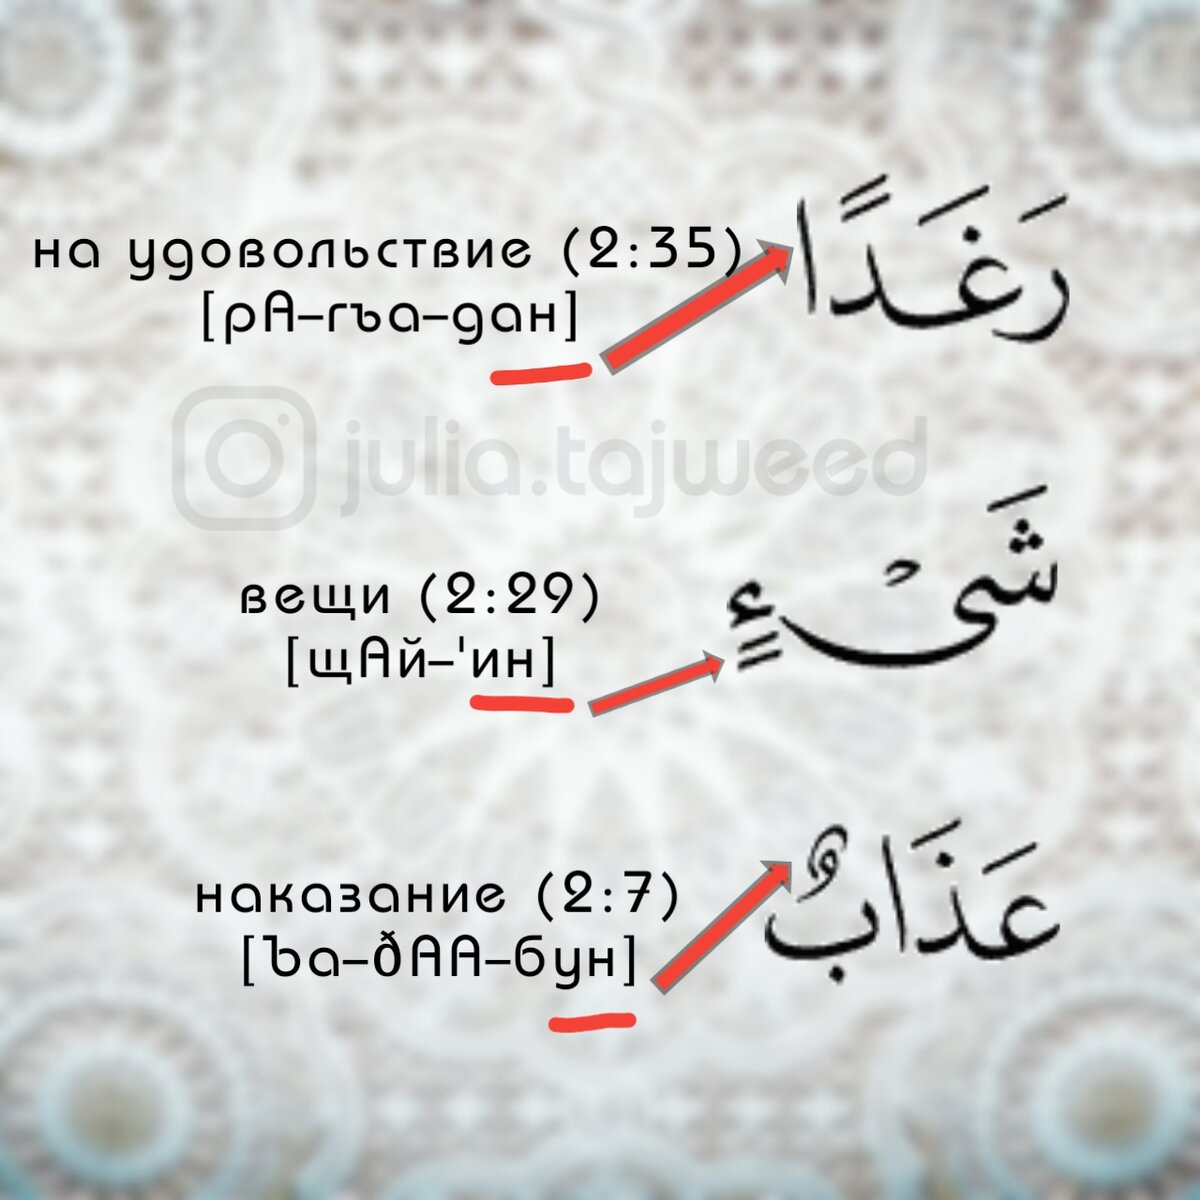 переводчик с арабского на русский по фотографии